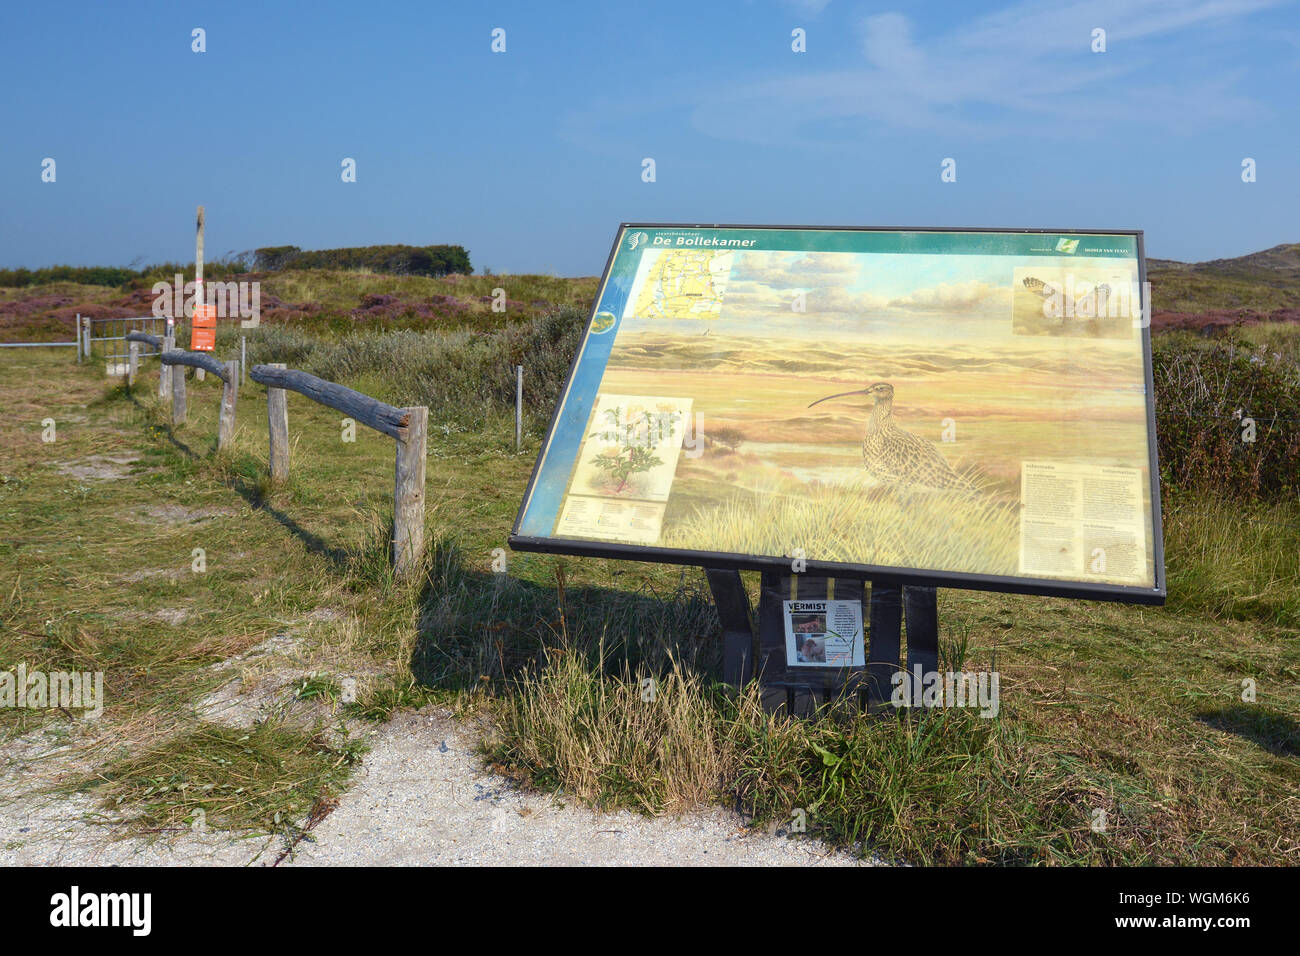 Texel / Pays-Bas du Nord - Août 2019 : Entrée avec carte d'information de la réserve naturelle de 'De'Bollekamer sur l'île de Texel en Hollande Banque D'Images